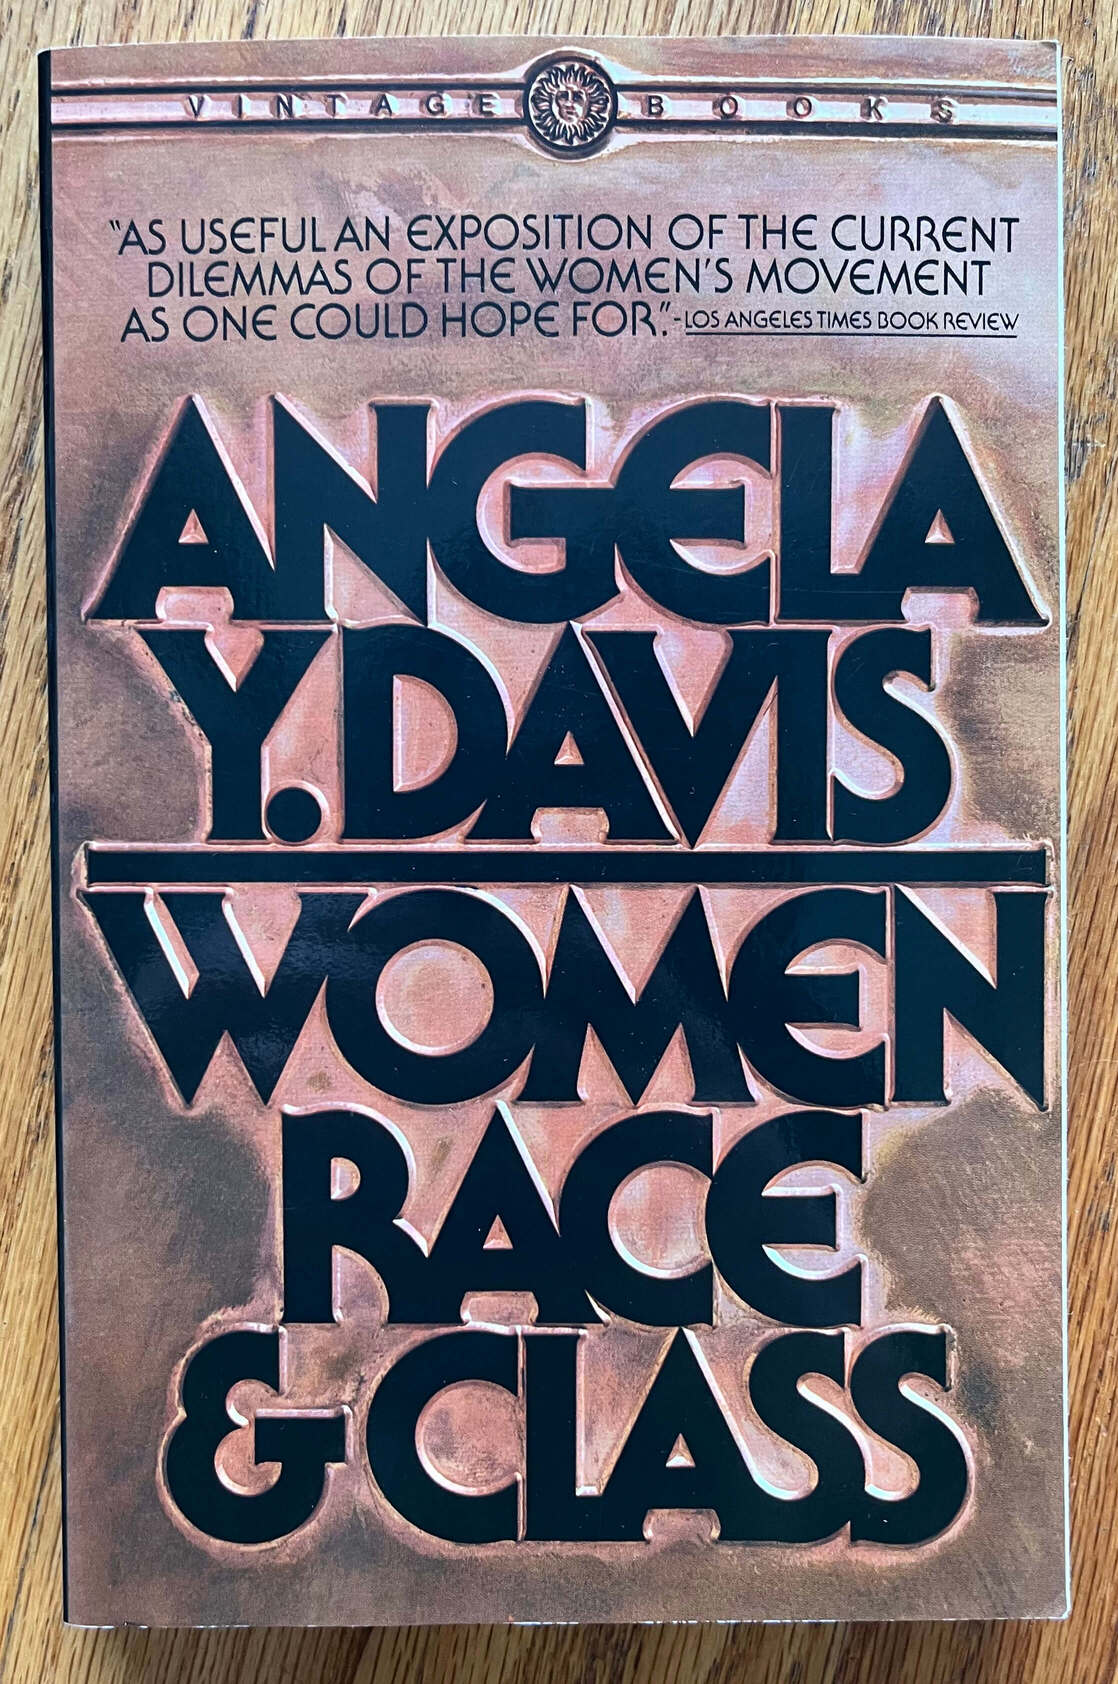 “Women Race & Class” by Angela Y. Davis.